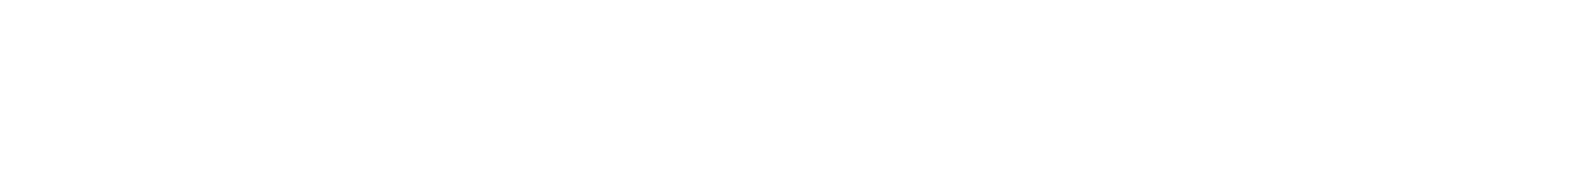 Porsche SE Logo groß für dunkle Hintergründe (transparentes PNG)